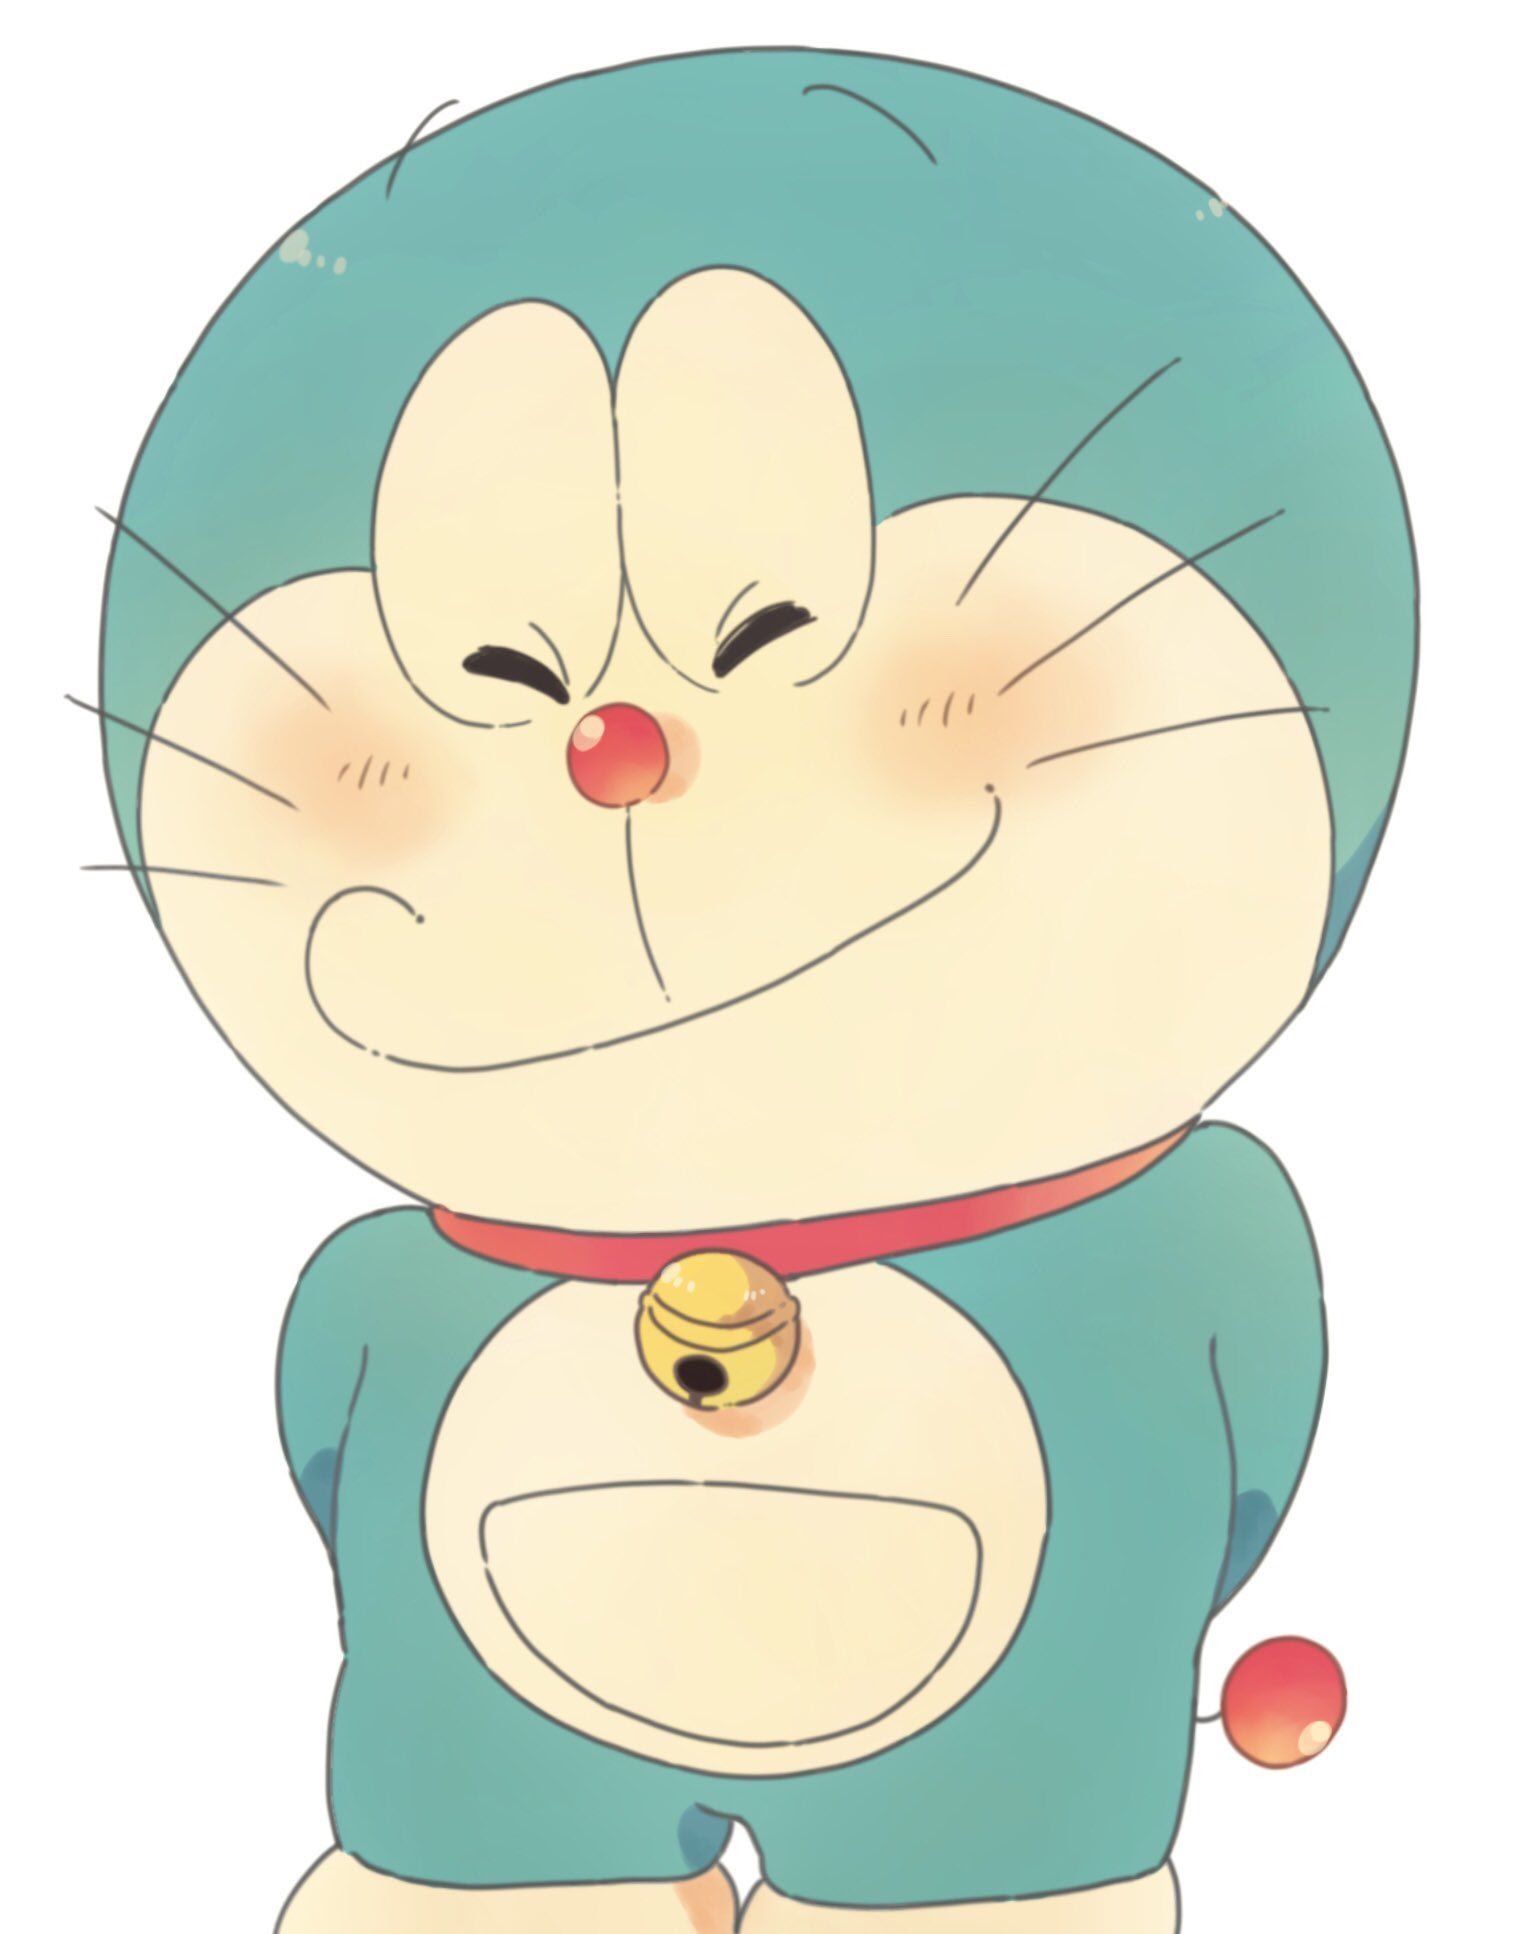 Doraemon là một trong những nhân vật phim hoạt hình nổi tiếng nhất mọi thời đại, và có rất nhiều sự thật thú vị xoay quanh chú mèo robot này. Xem thêm đồng hồ trả lời câu hỏi của Doraemon, hoặc phân tích những hành động của chú trên màn hình. Điều này sẽ giúp bạn hiểu rõ hơn về Doraemon và nâng cao kiến thức của mình.